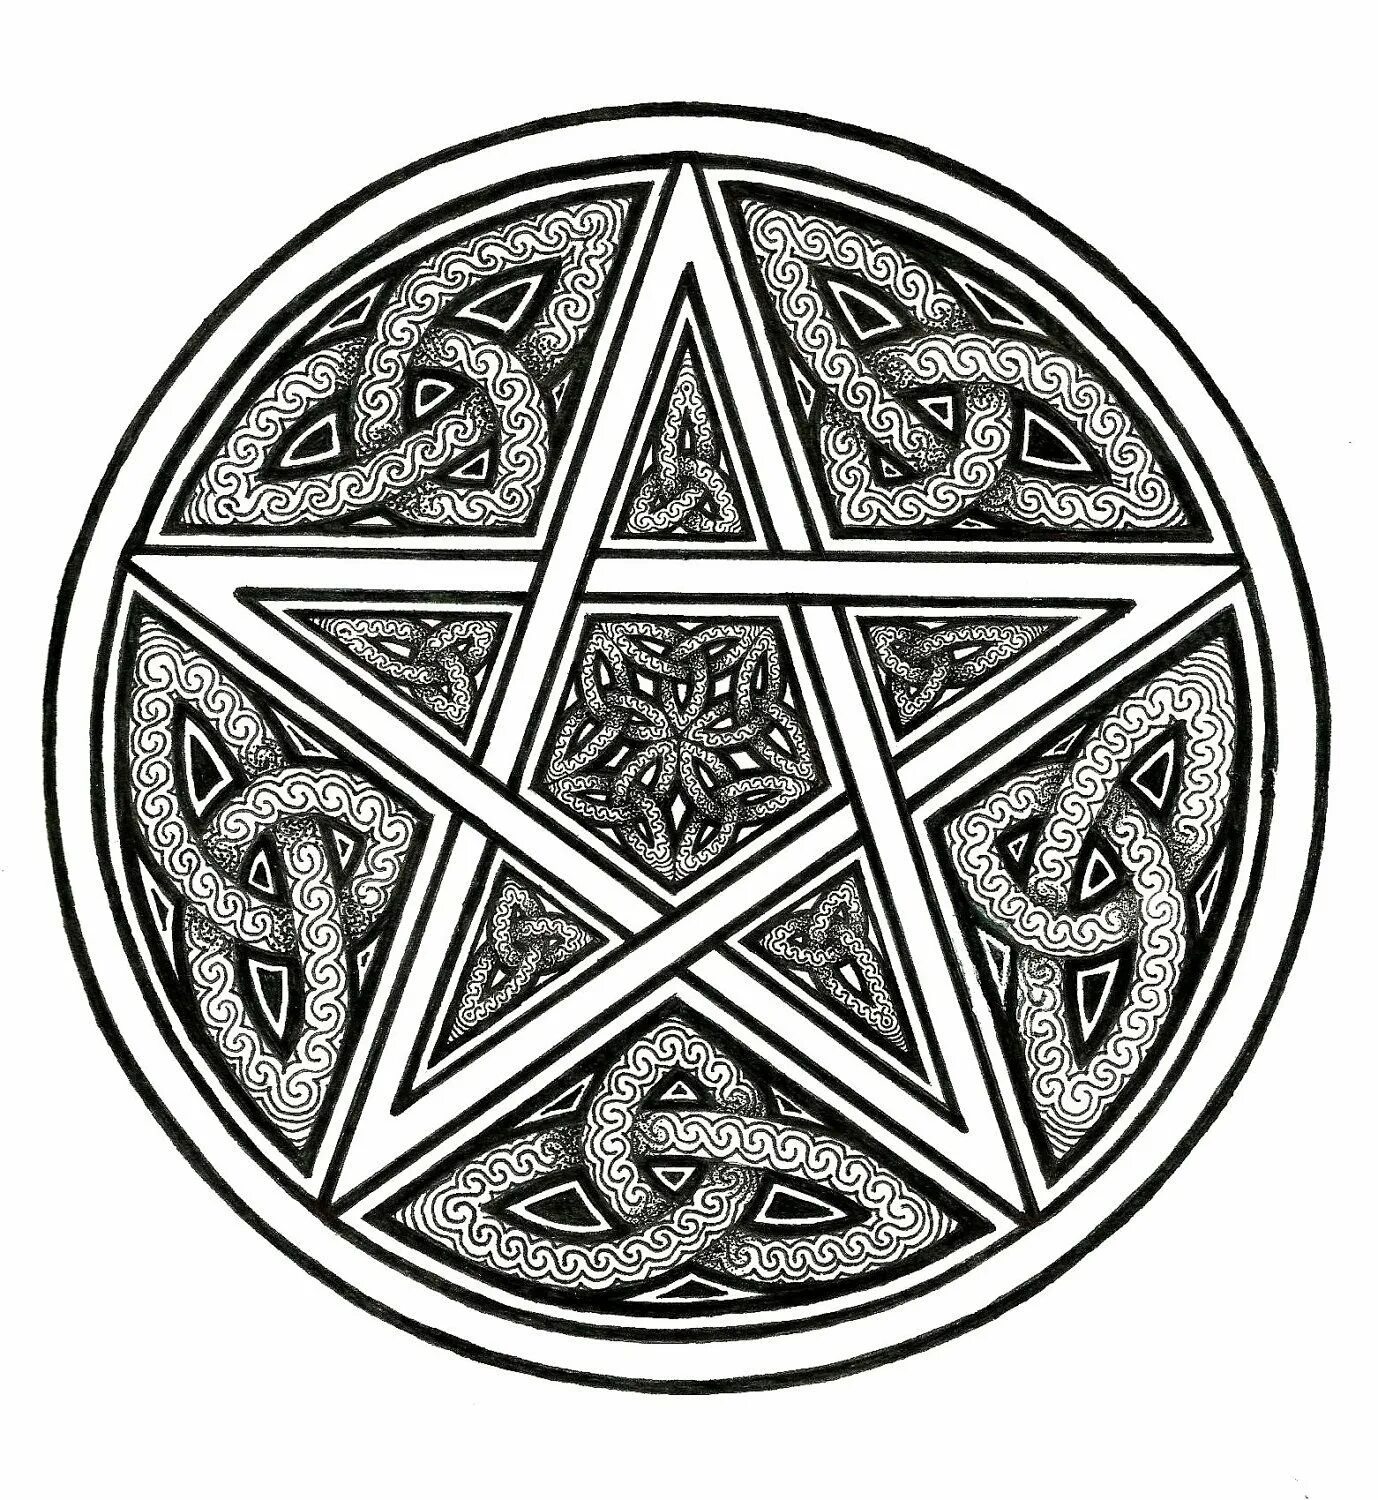 Звезда пентаклей. Пентаграмма Викканская магия. Пентакль Соломона пятиконечная звезда. Кельтская пентаграмма звезда. Кельтская пятиконечная звезда.